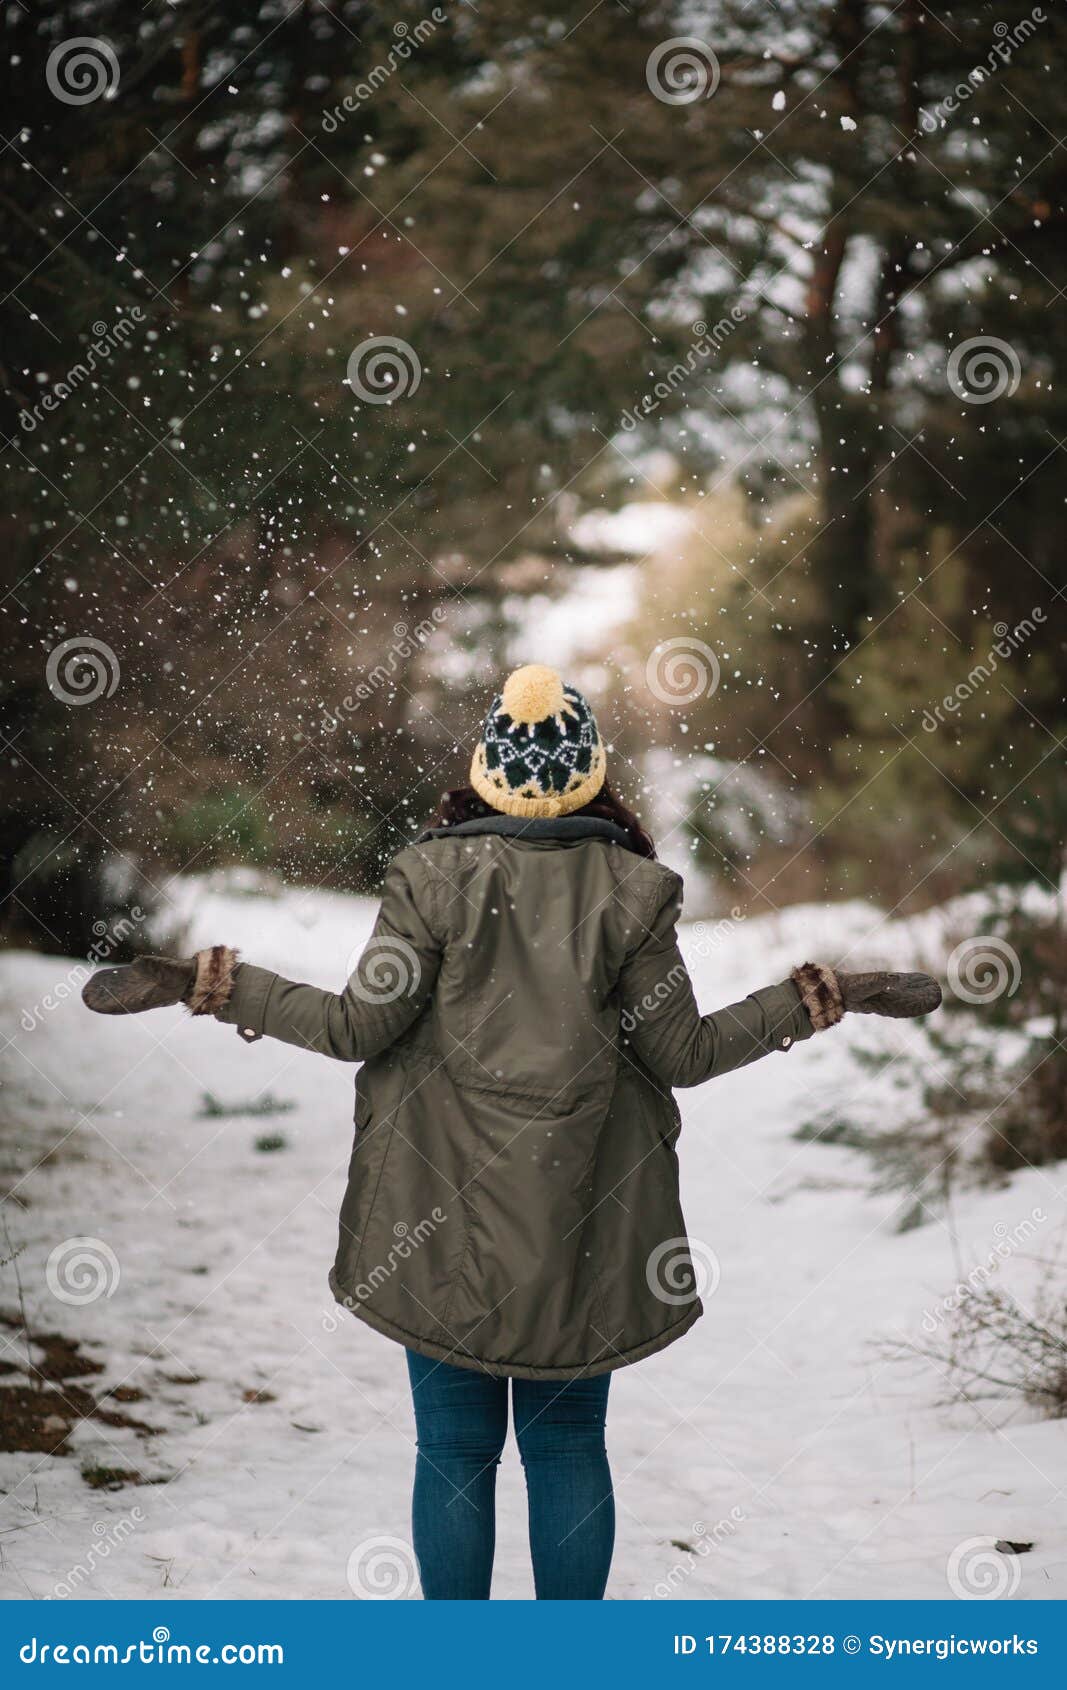 Fotos de Mujer en la nieve, Imagens de Mujer en la nieve sem royalties